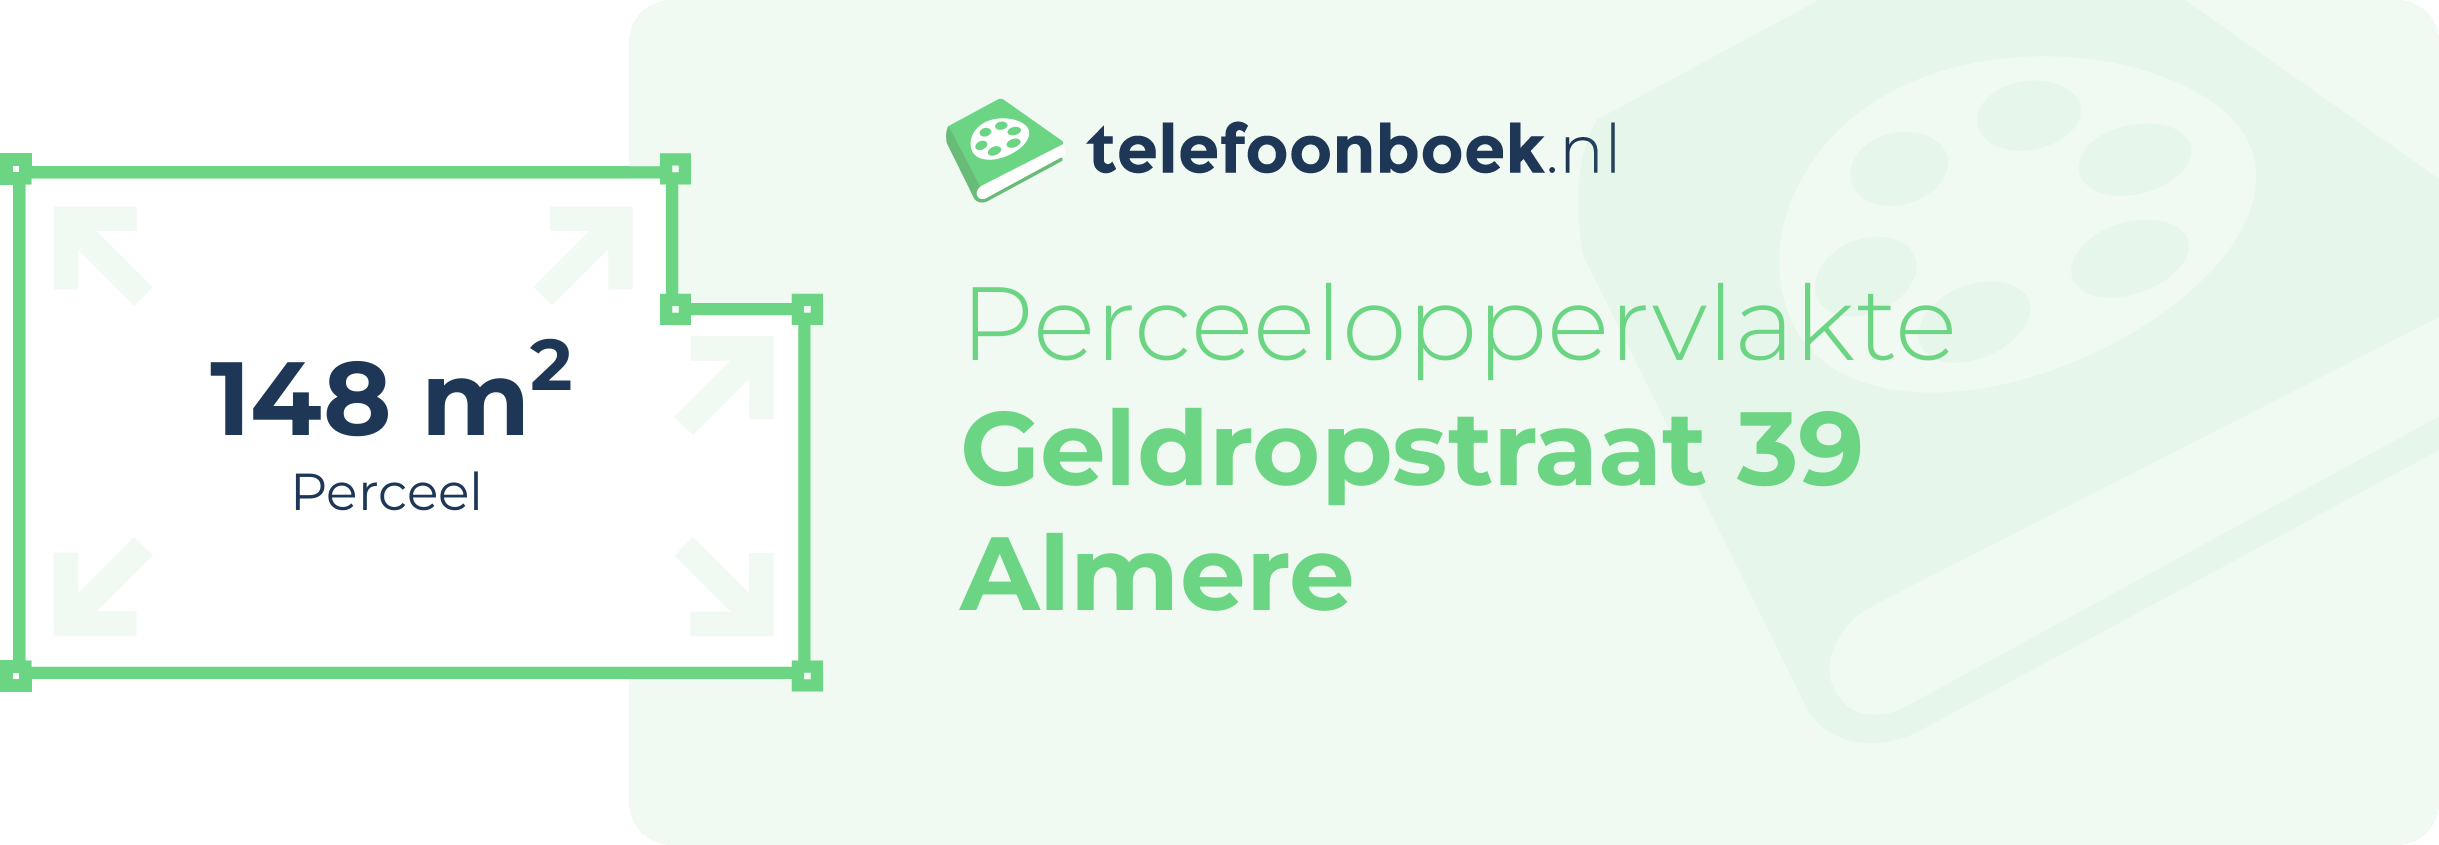 Perceeloppervlakte Geldropstraat 39 Almere